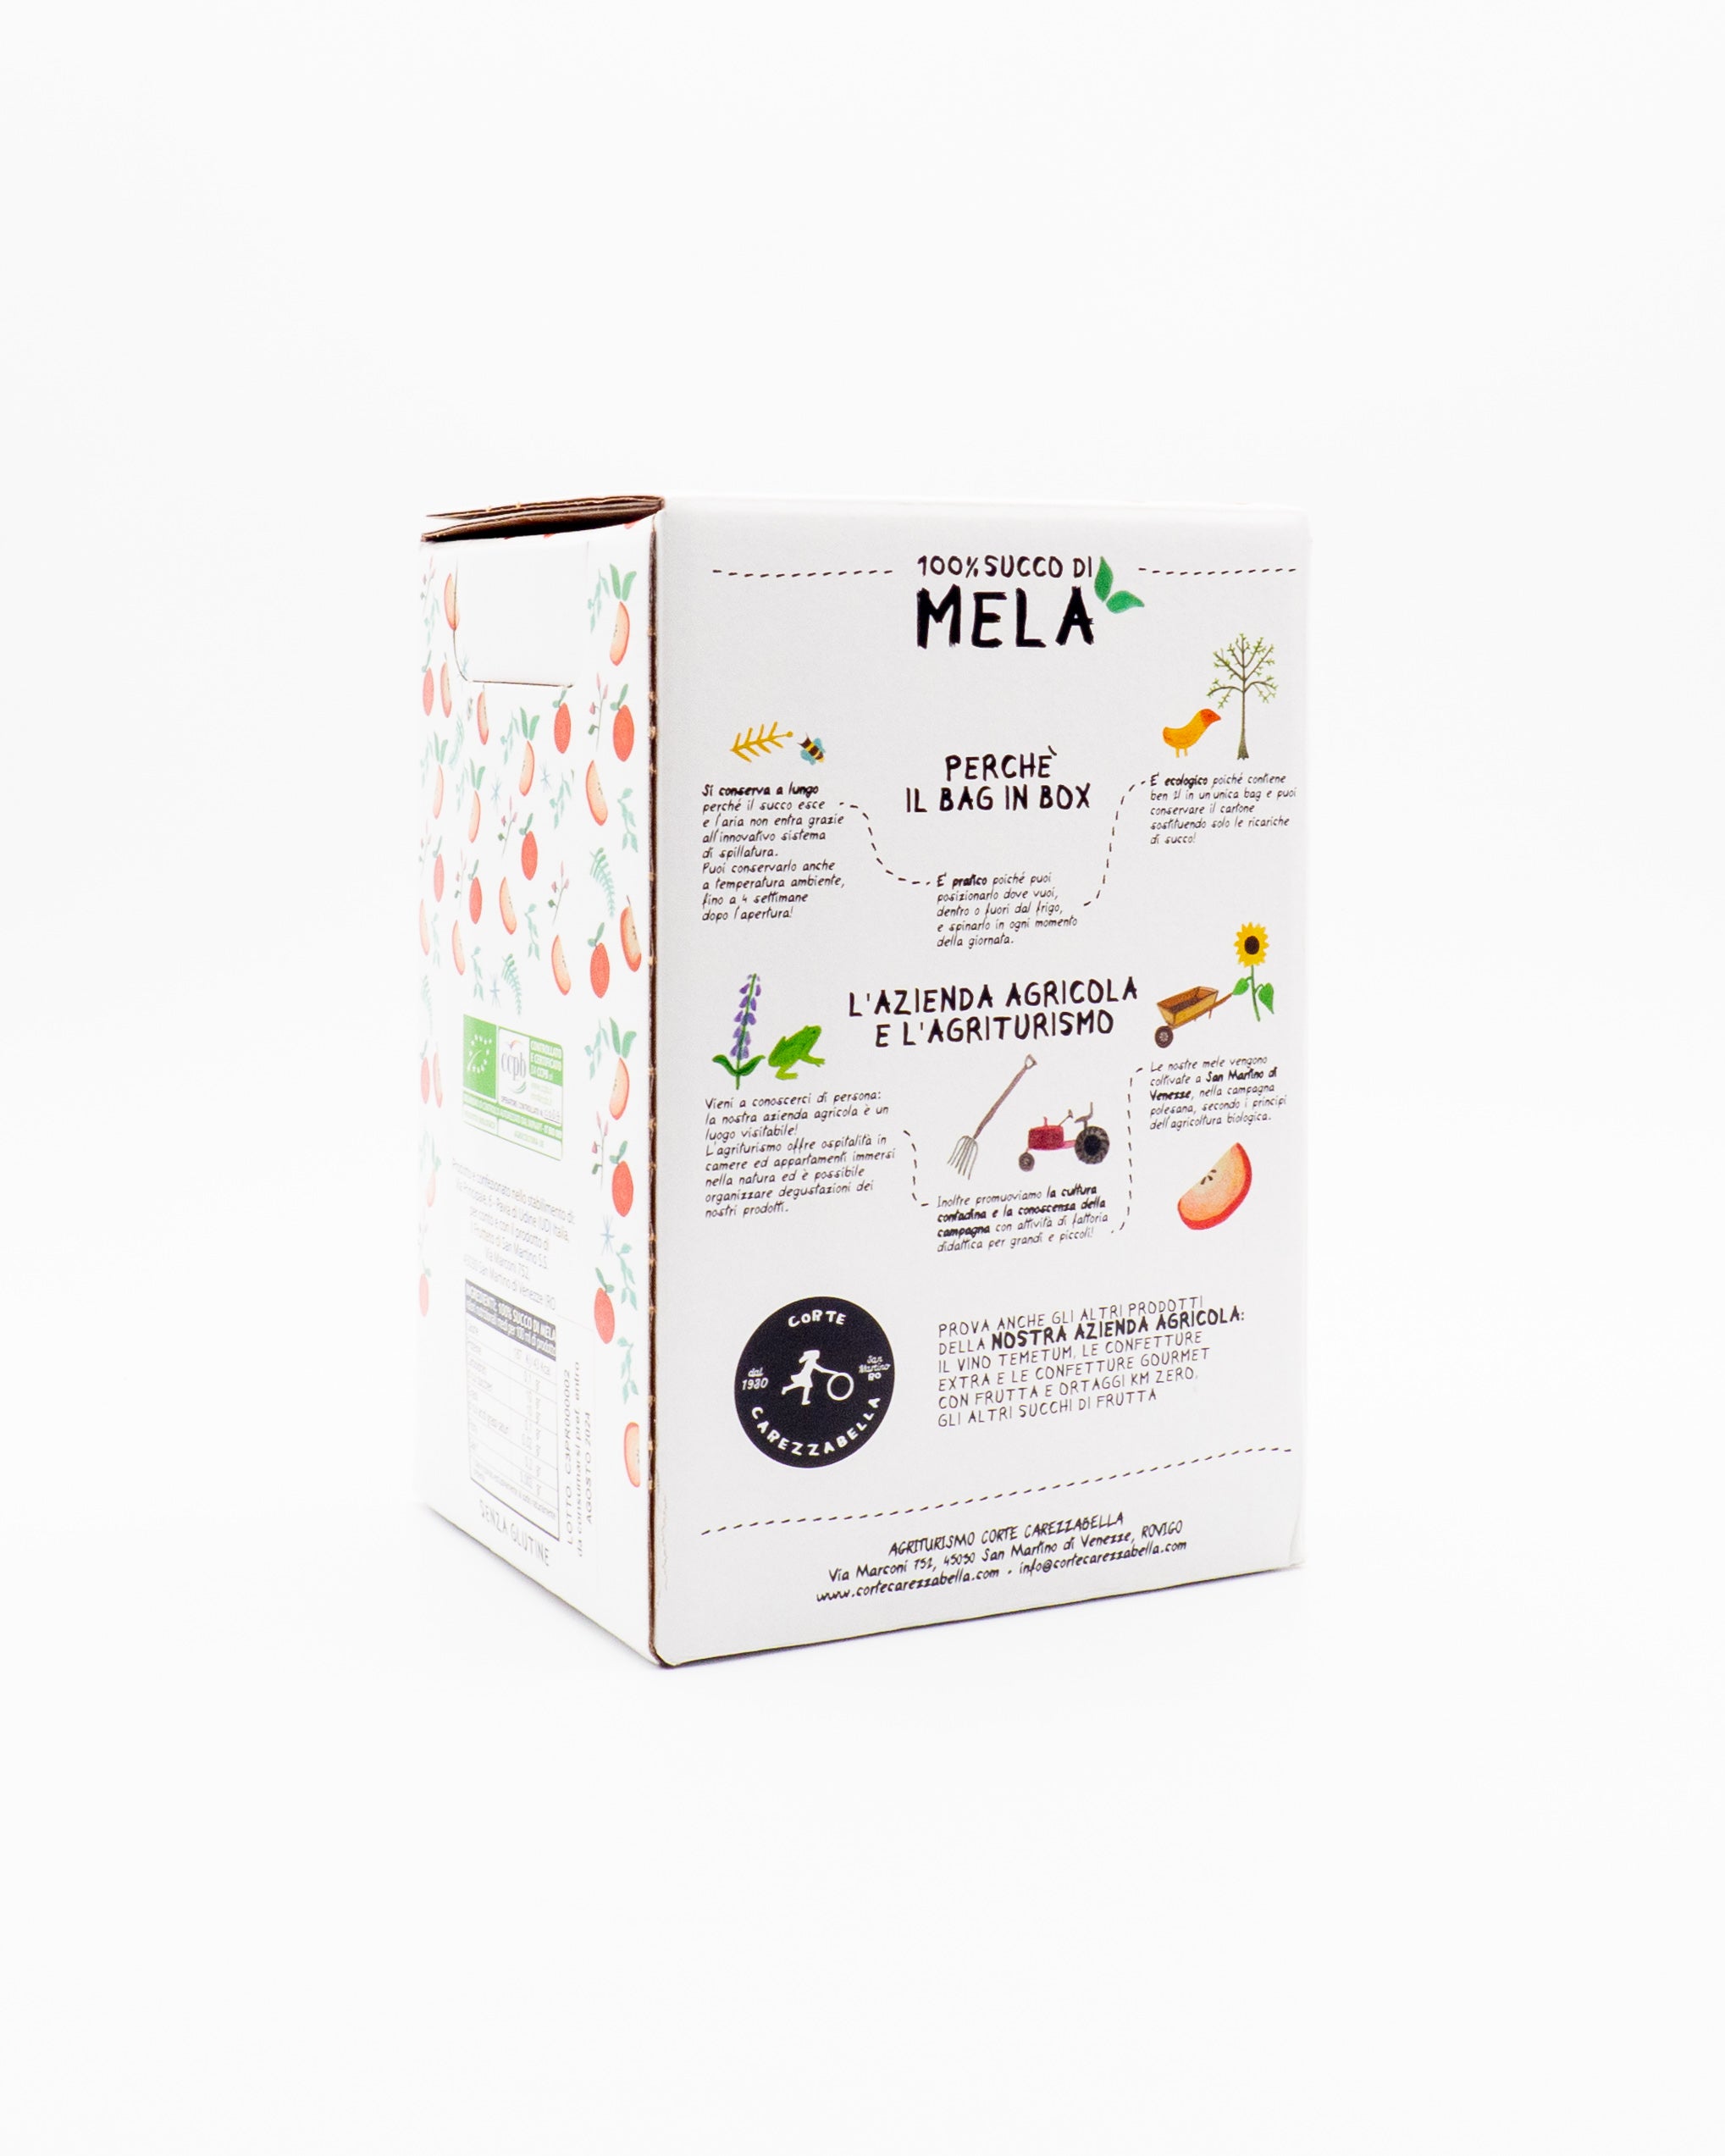 Succo di Mela Biologico 100% - Bag in Box 2L - Corte Carezzabella